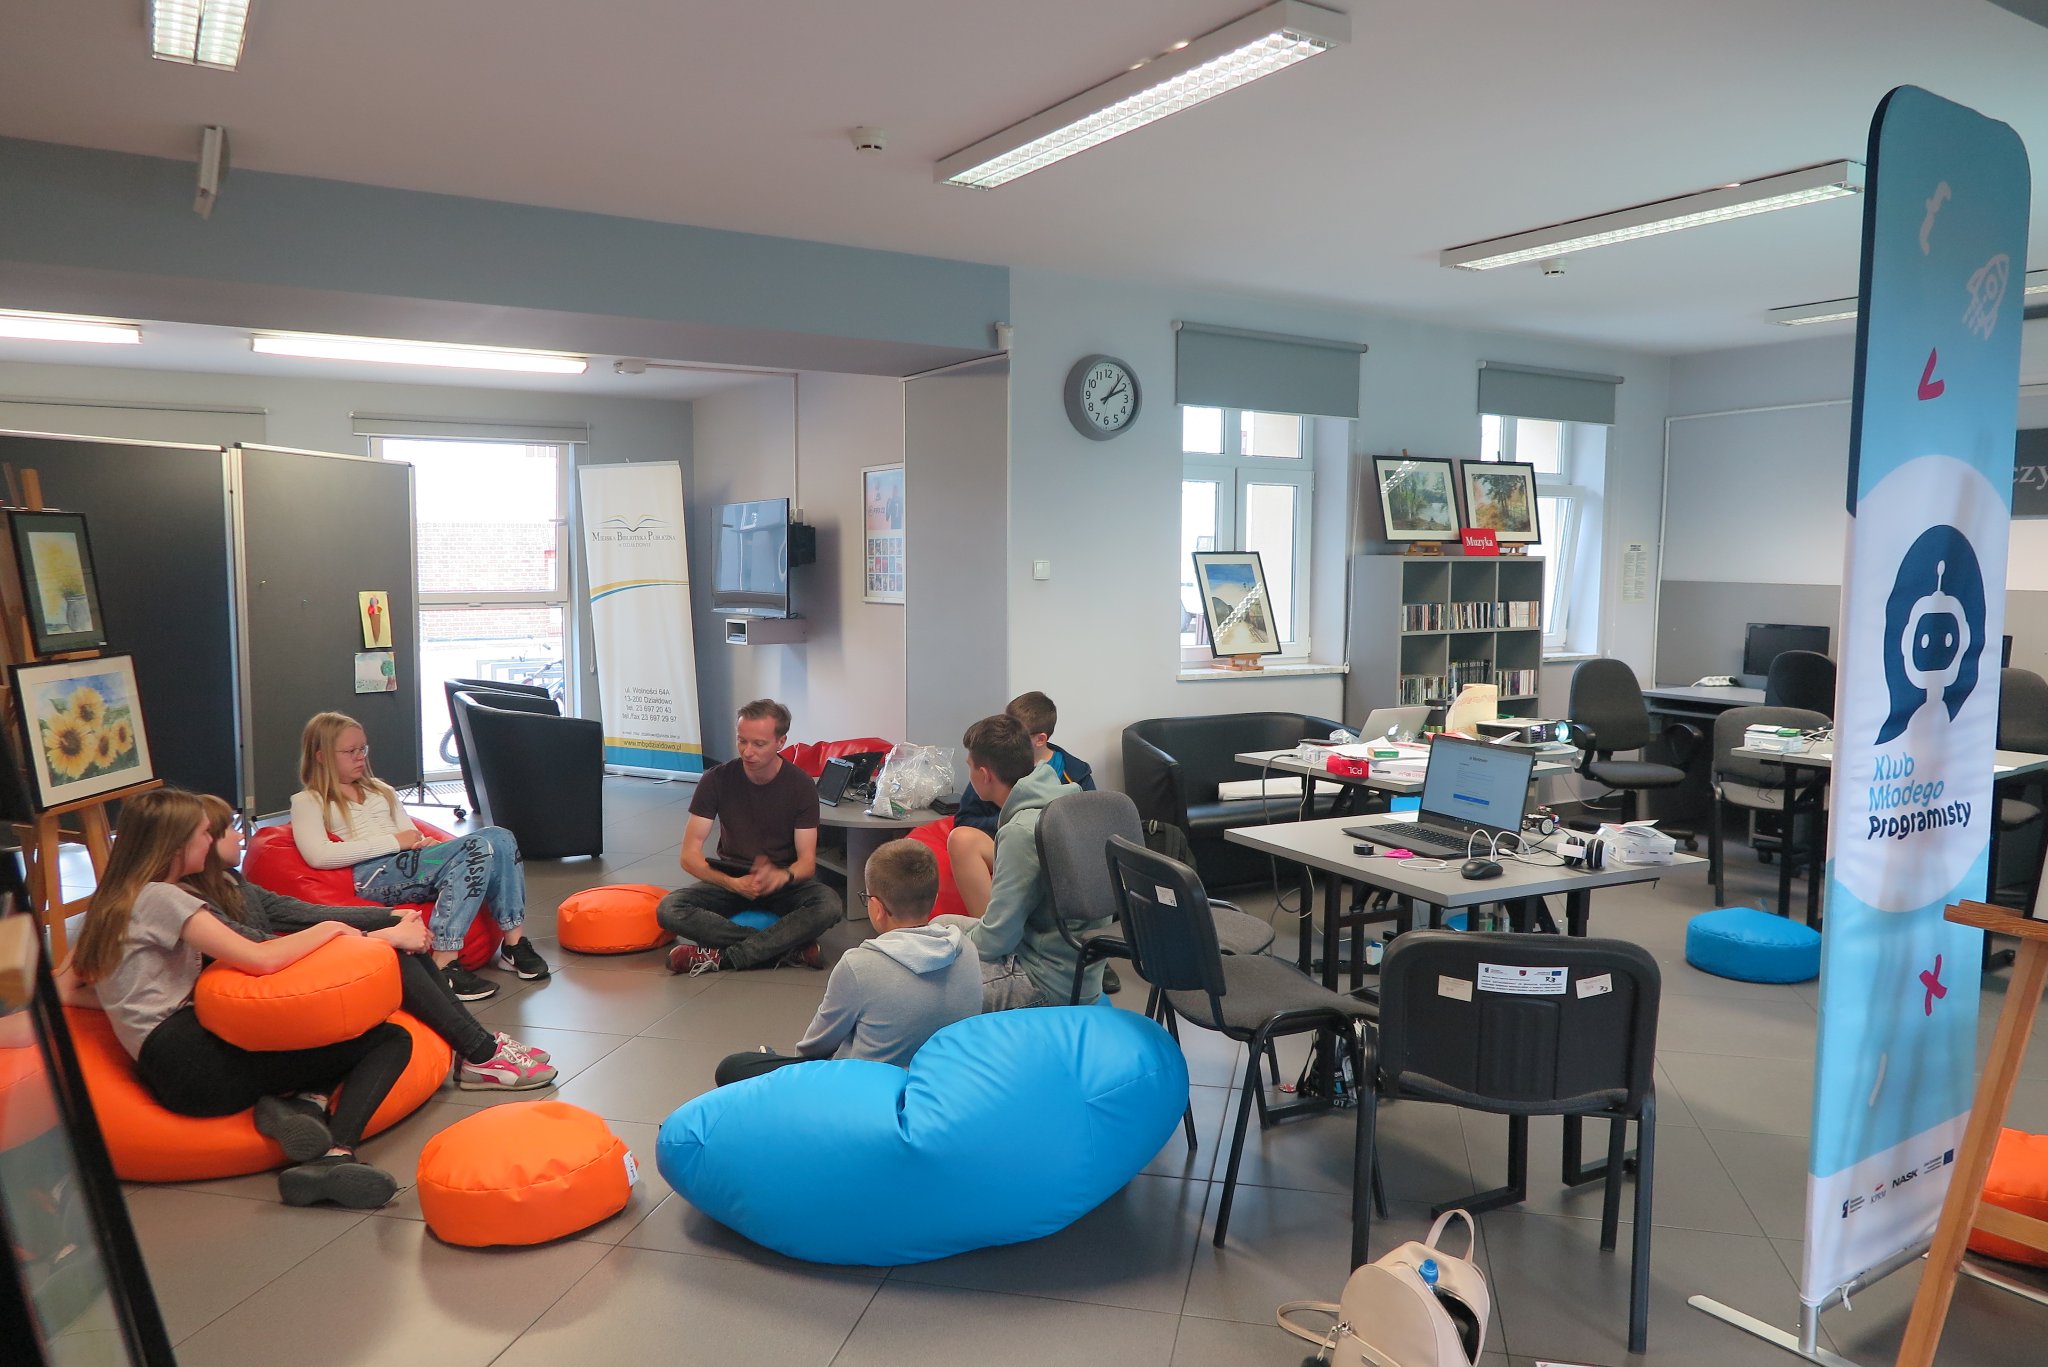 wnętrze mediateki, trener i uczestnicy warsztatów siedzą na kolorowych pufach, obok na stolikach  leżą laptopy, z prawej strony stoi baner Klub Młodego Programisty